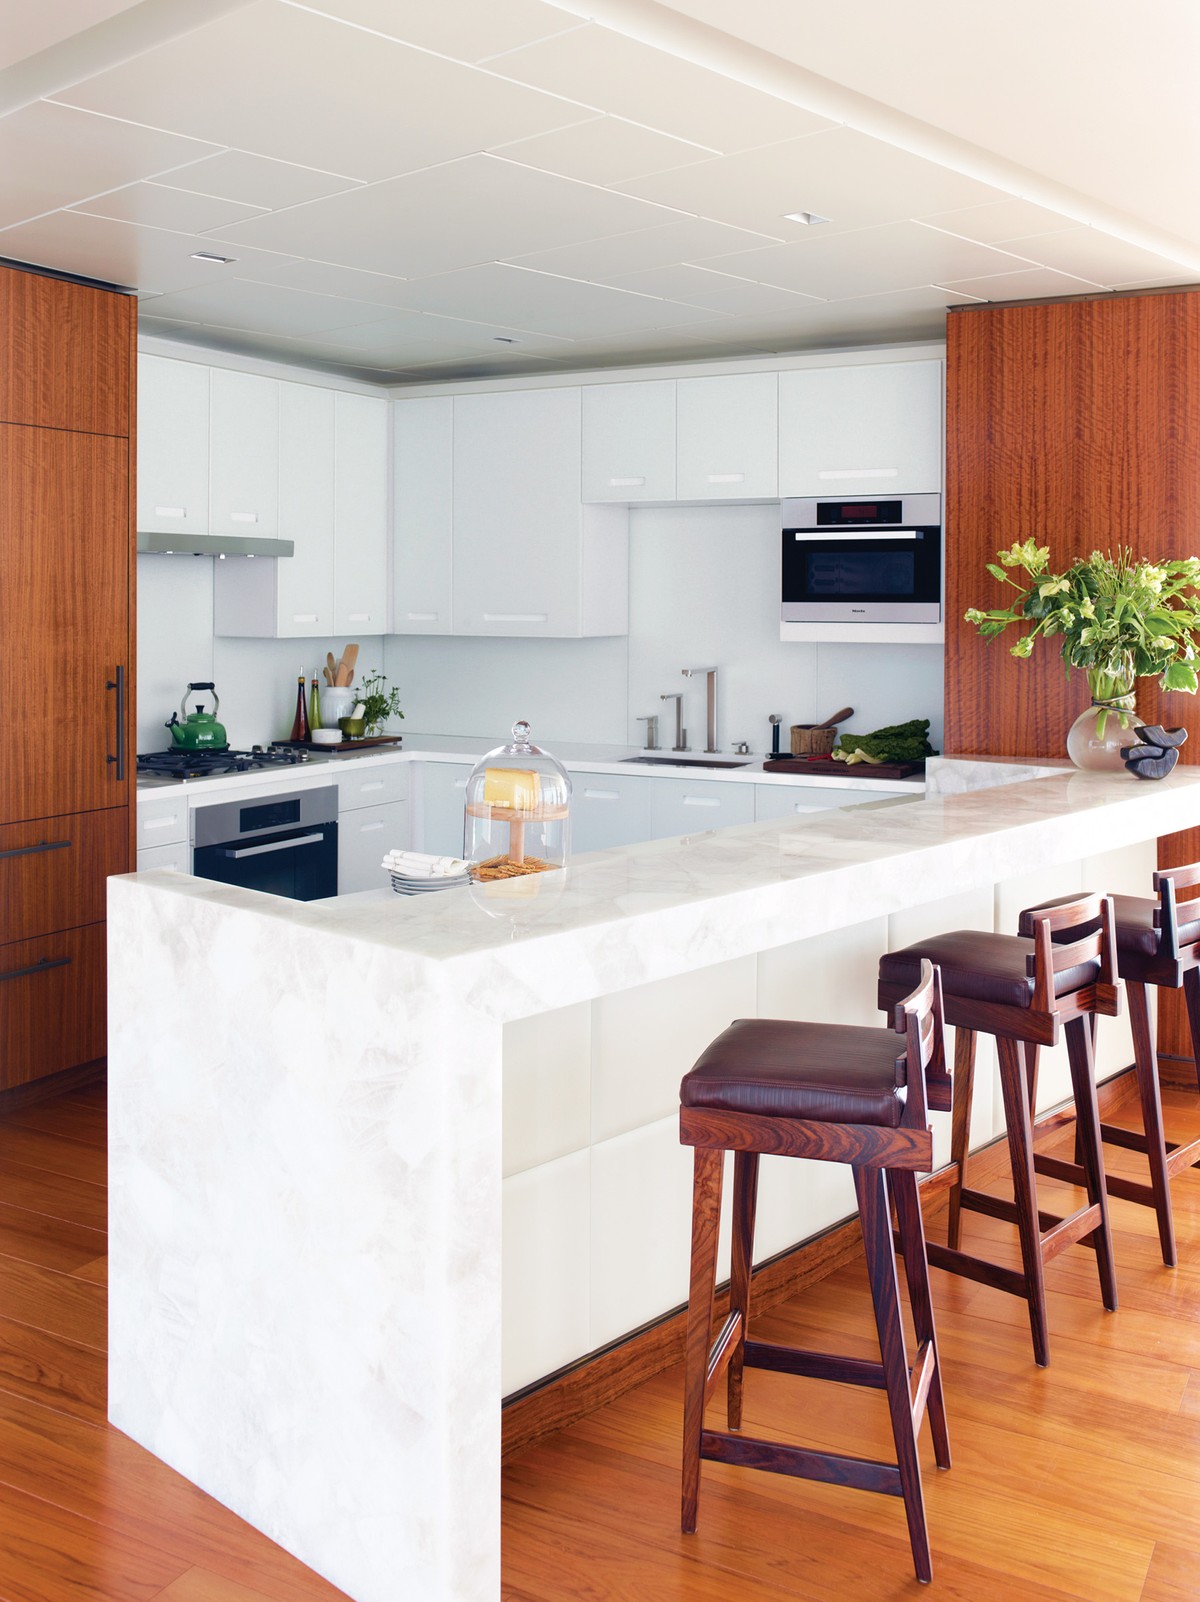 A kitchen designed by Phillip Thomas uses quartz.